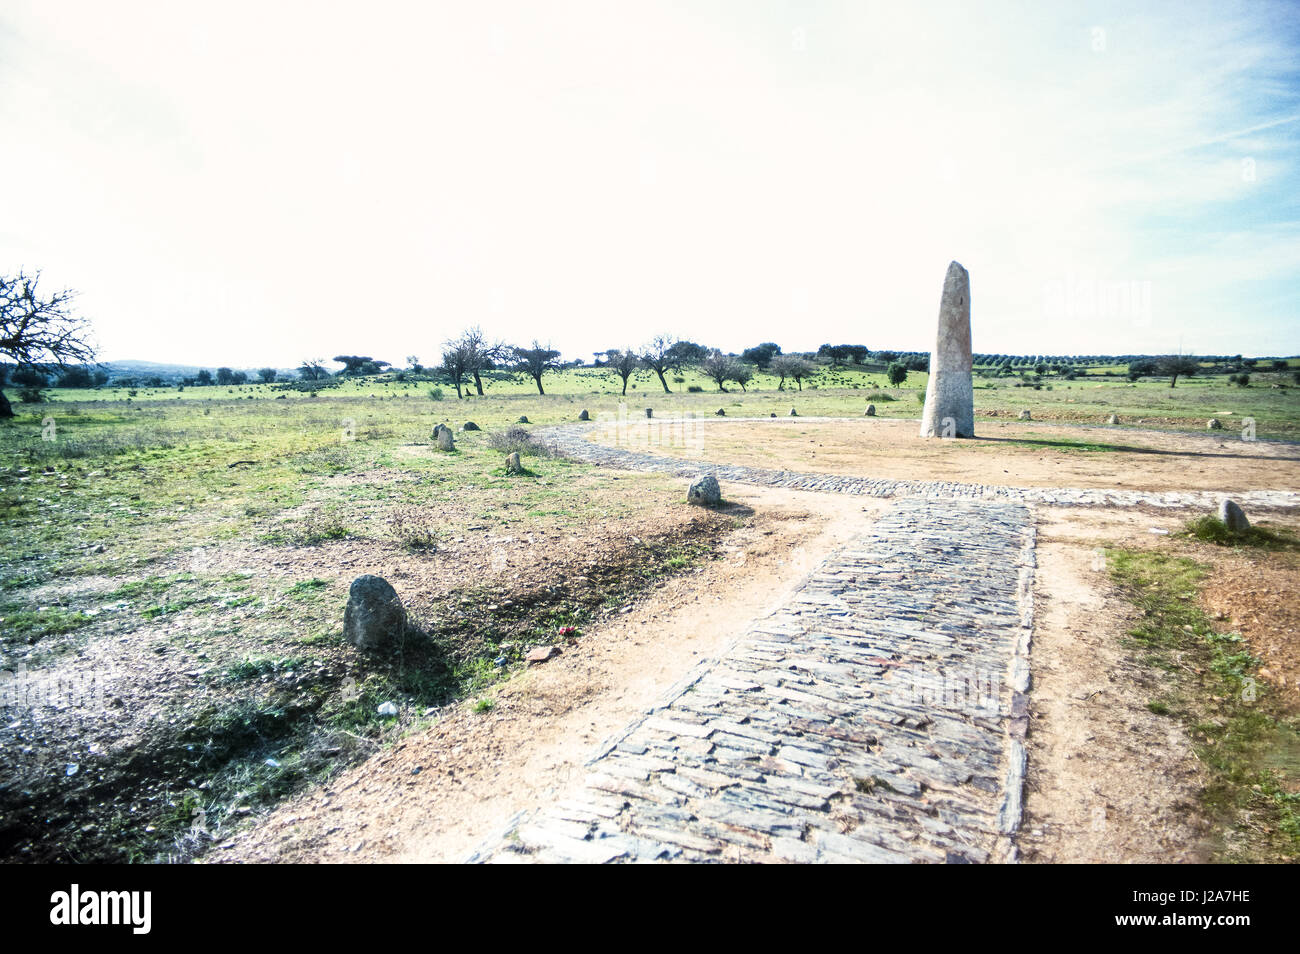 A causa della sua posizione geografica, la collina di Monsaraz sempre occupato un posto importante nella storia del comune, che è stato occupato da diversi popoli poiché la fase di pre-registrazione storica.[3] è uno dei più antichi insediamenti portoghese del Portogallo meridionale, occupata dal pre-storia, i cui esempi di abitazione permanente includono centinaia di monumenti megalitici. Questi includono i resti del neolitico di: monumenti megalitici di Herdade de Xerez, Olival da Pega Dolmen (anta), Bulhoa menhir, Rocha dos Namorados Menhir e Outeiro Menhir. La collina sulla quale l'insediamento principale Foto Stock